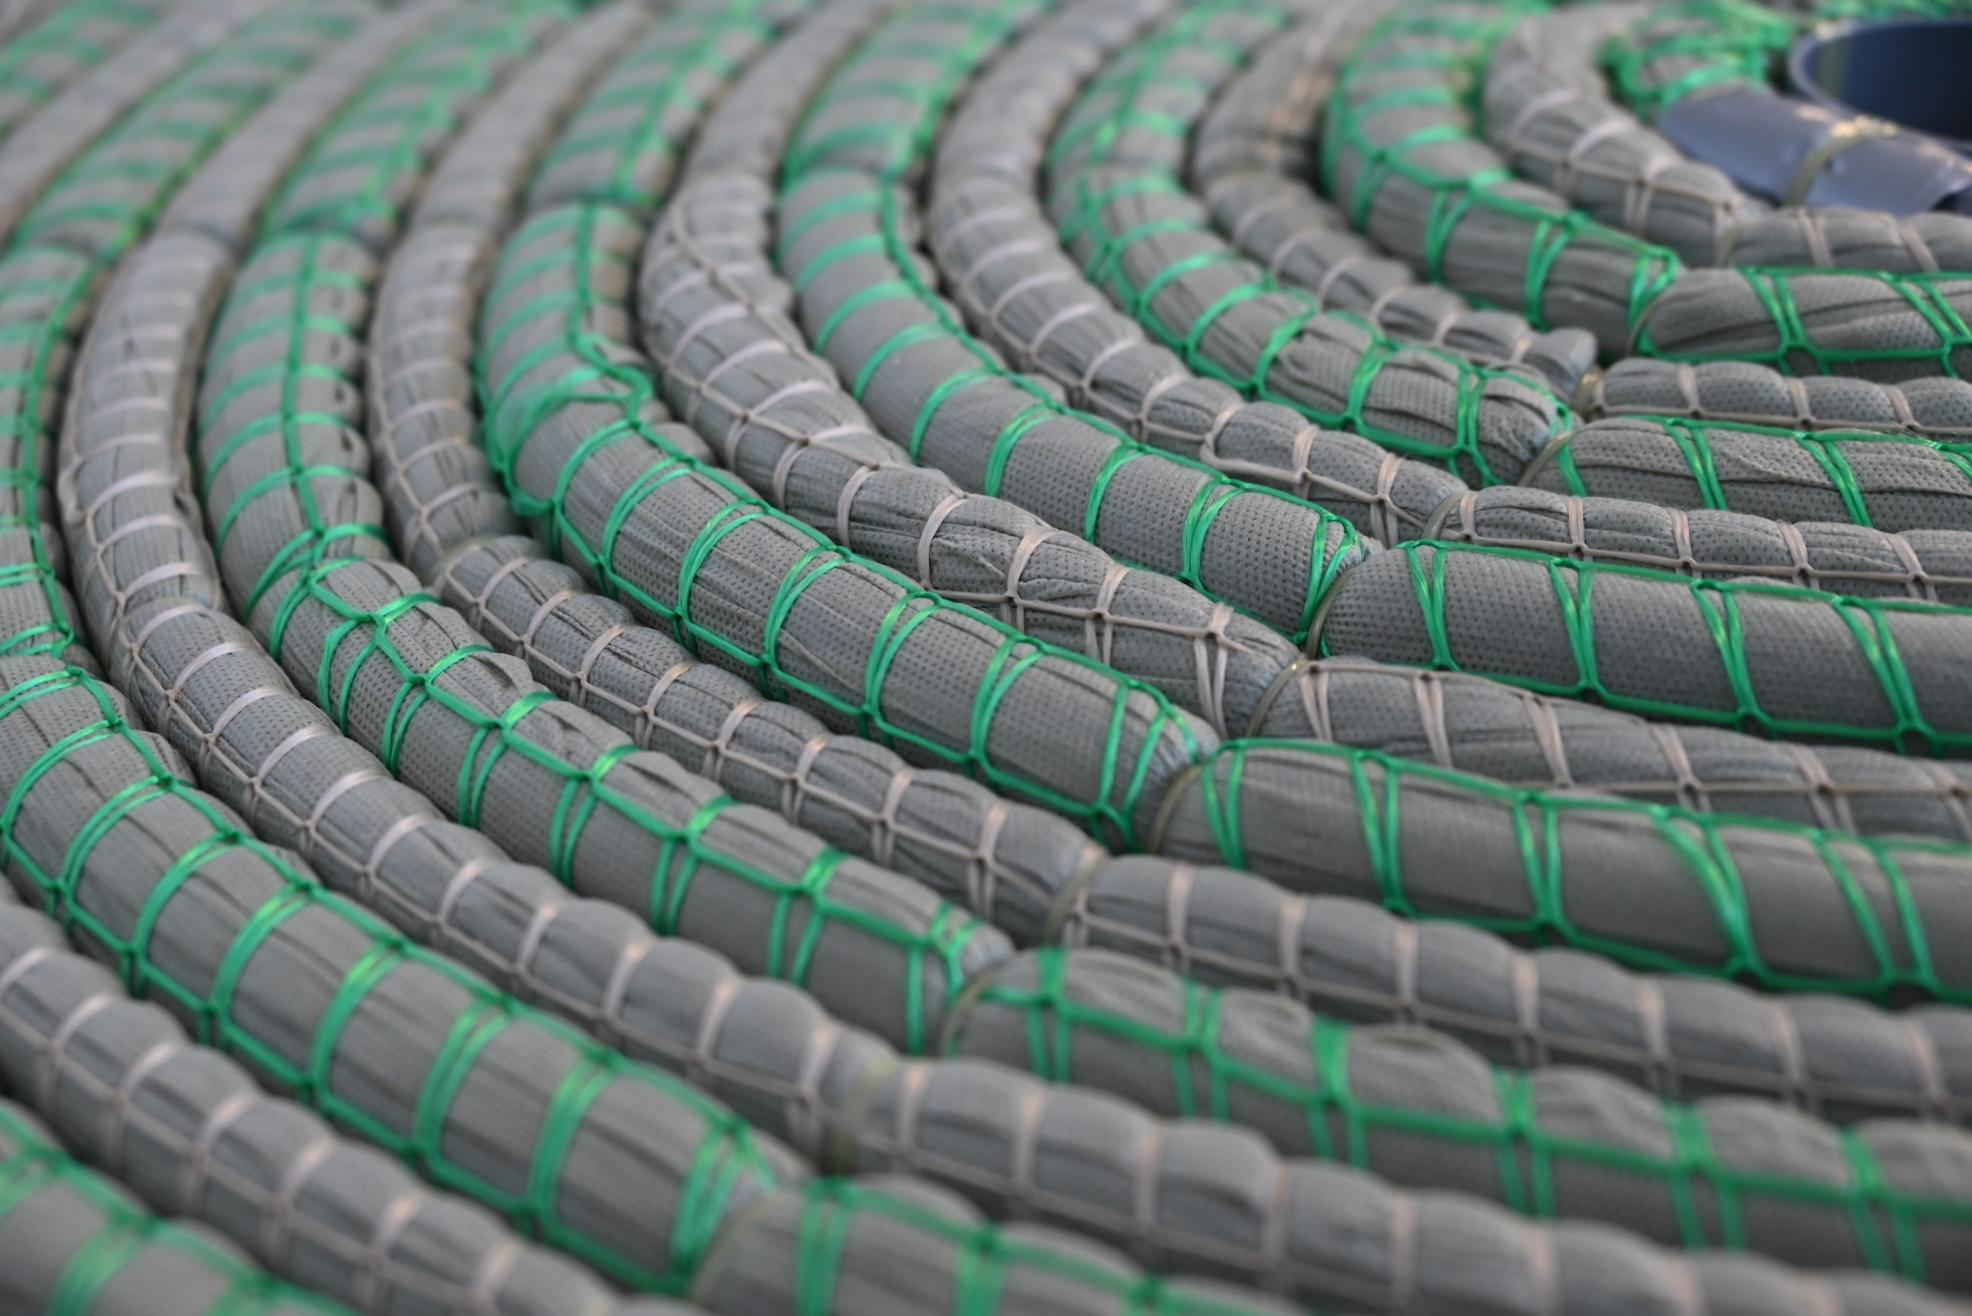 Textile Matten zur Nutzung als Schwimmfilter in der Gewässersanierung – die Matten schwimmen auf der Gewässeroberfläche und werden auch von Fauna und Flora besiedelt